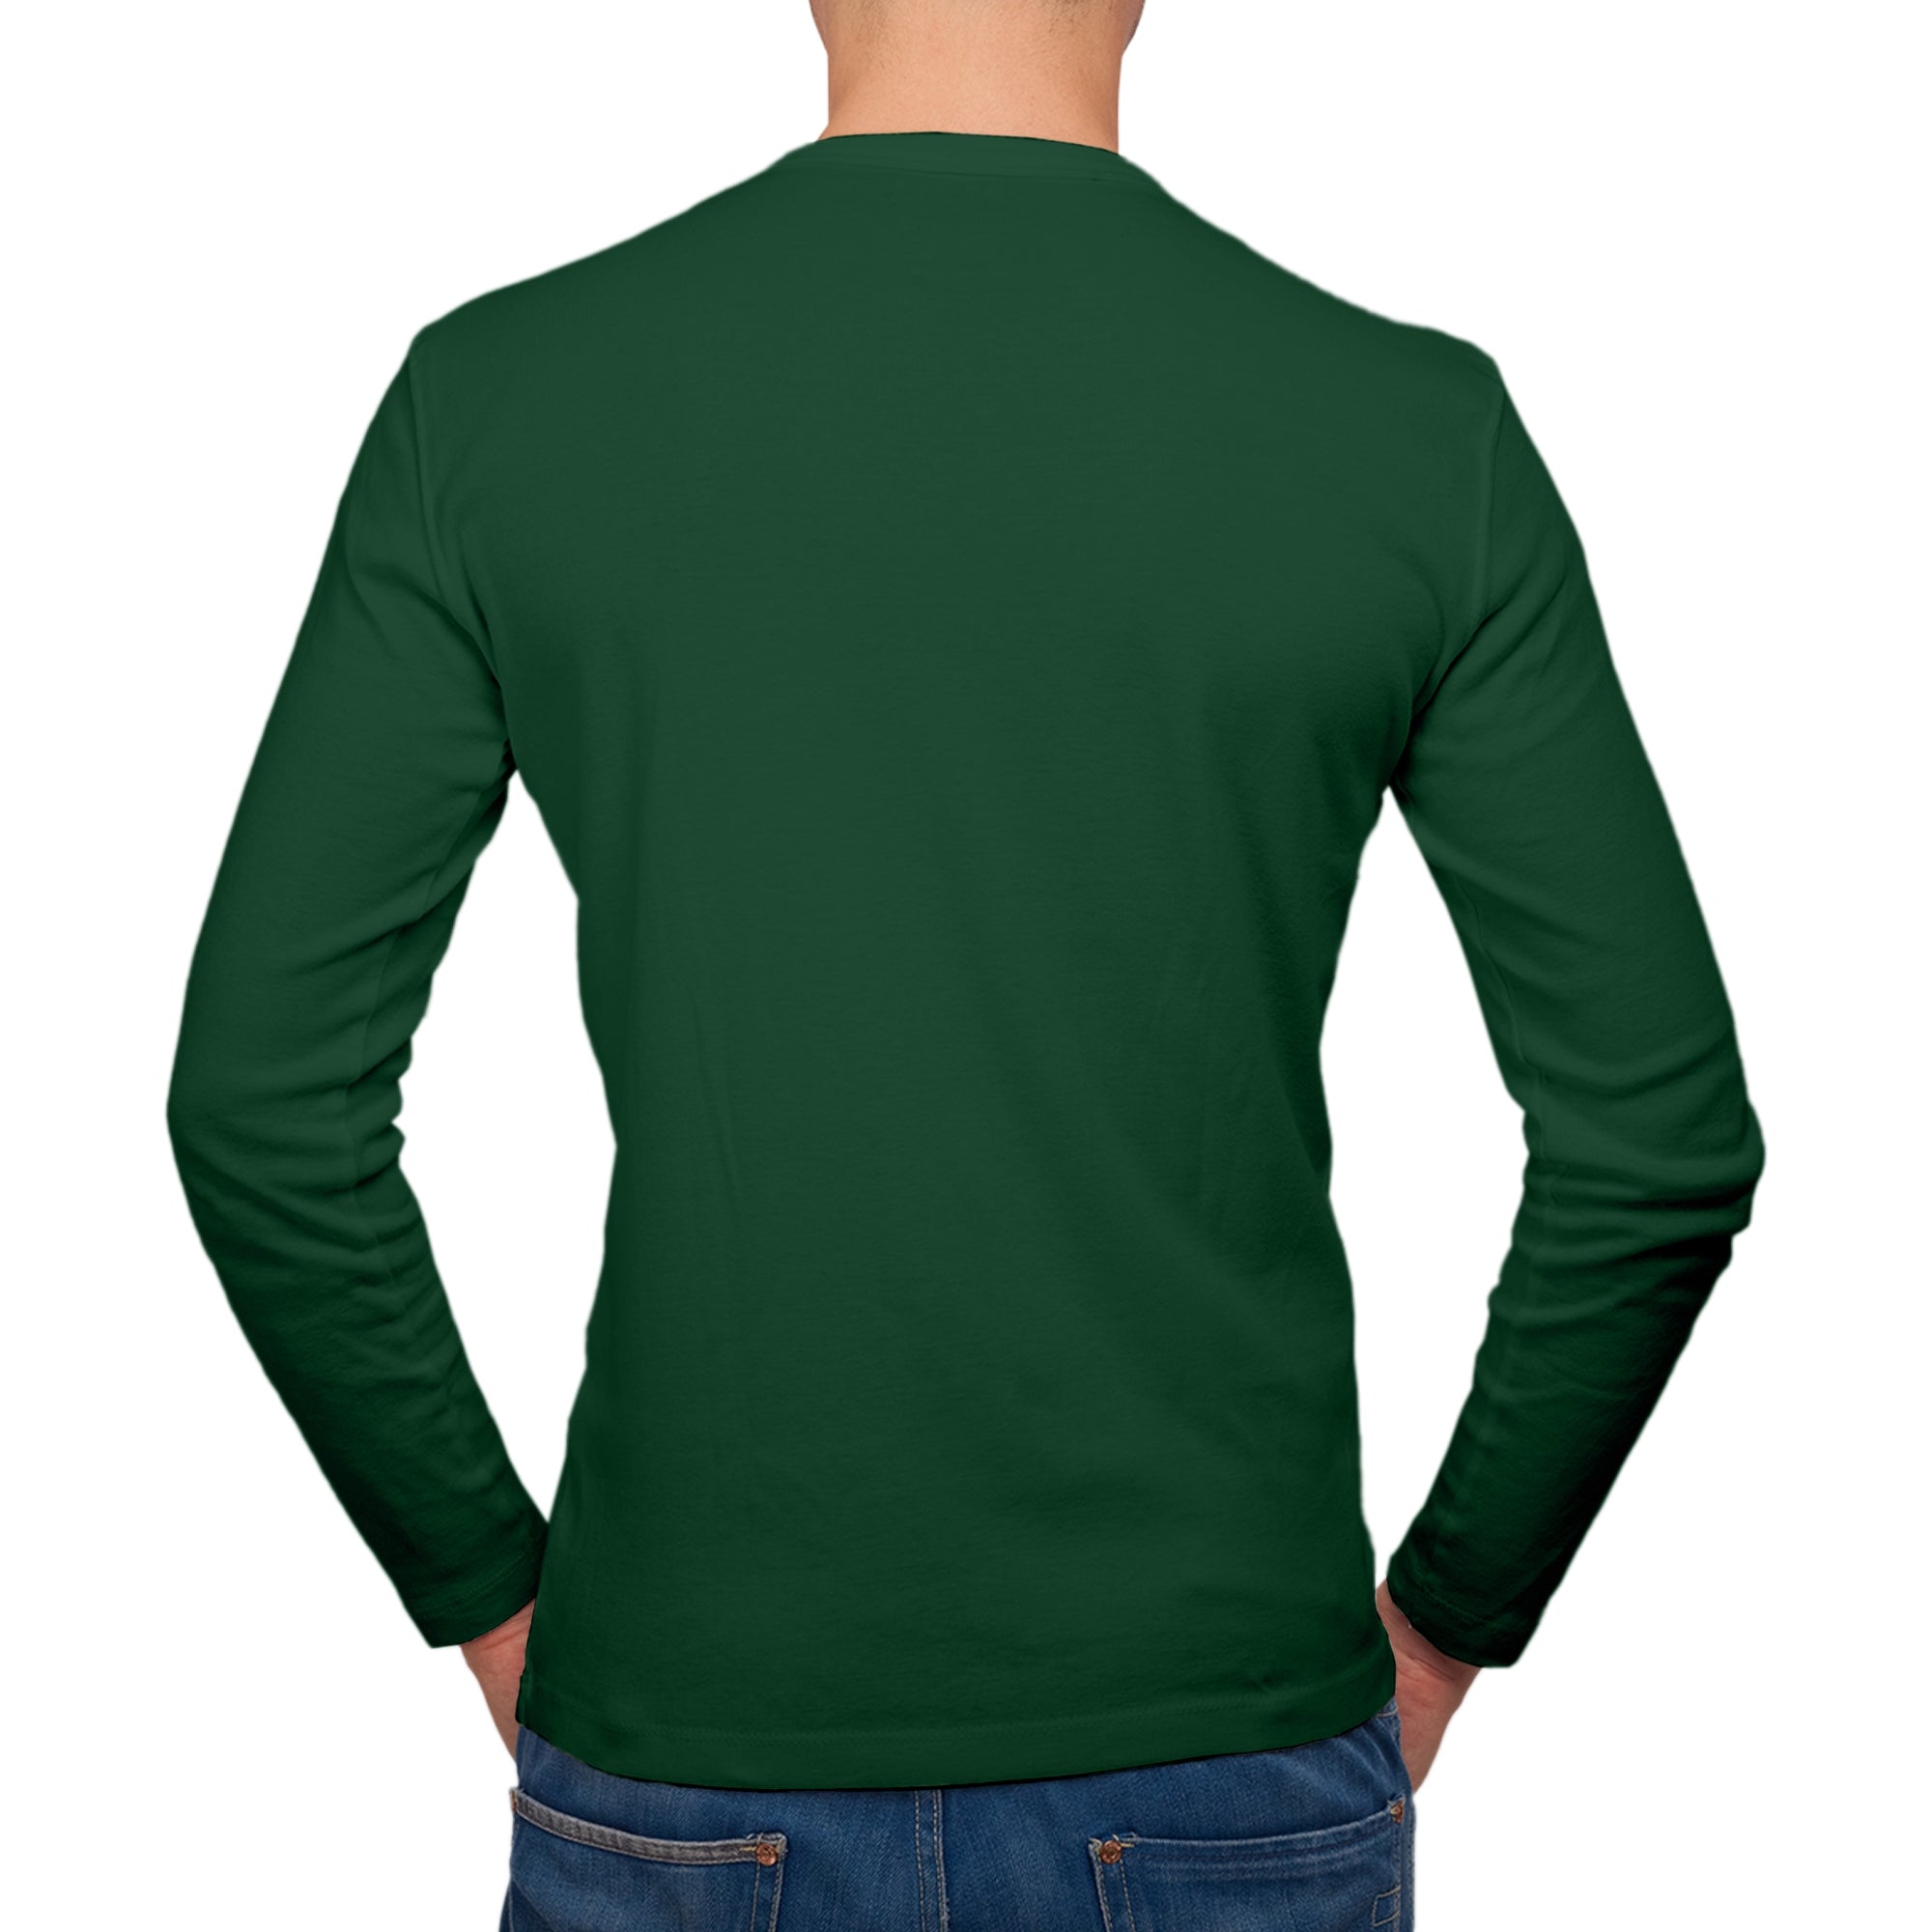 Full Sleeves Green T-Shirt For Men